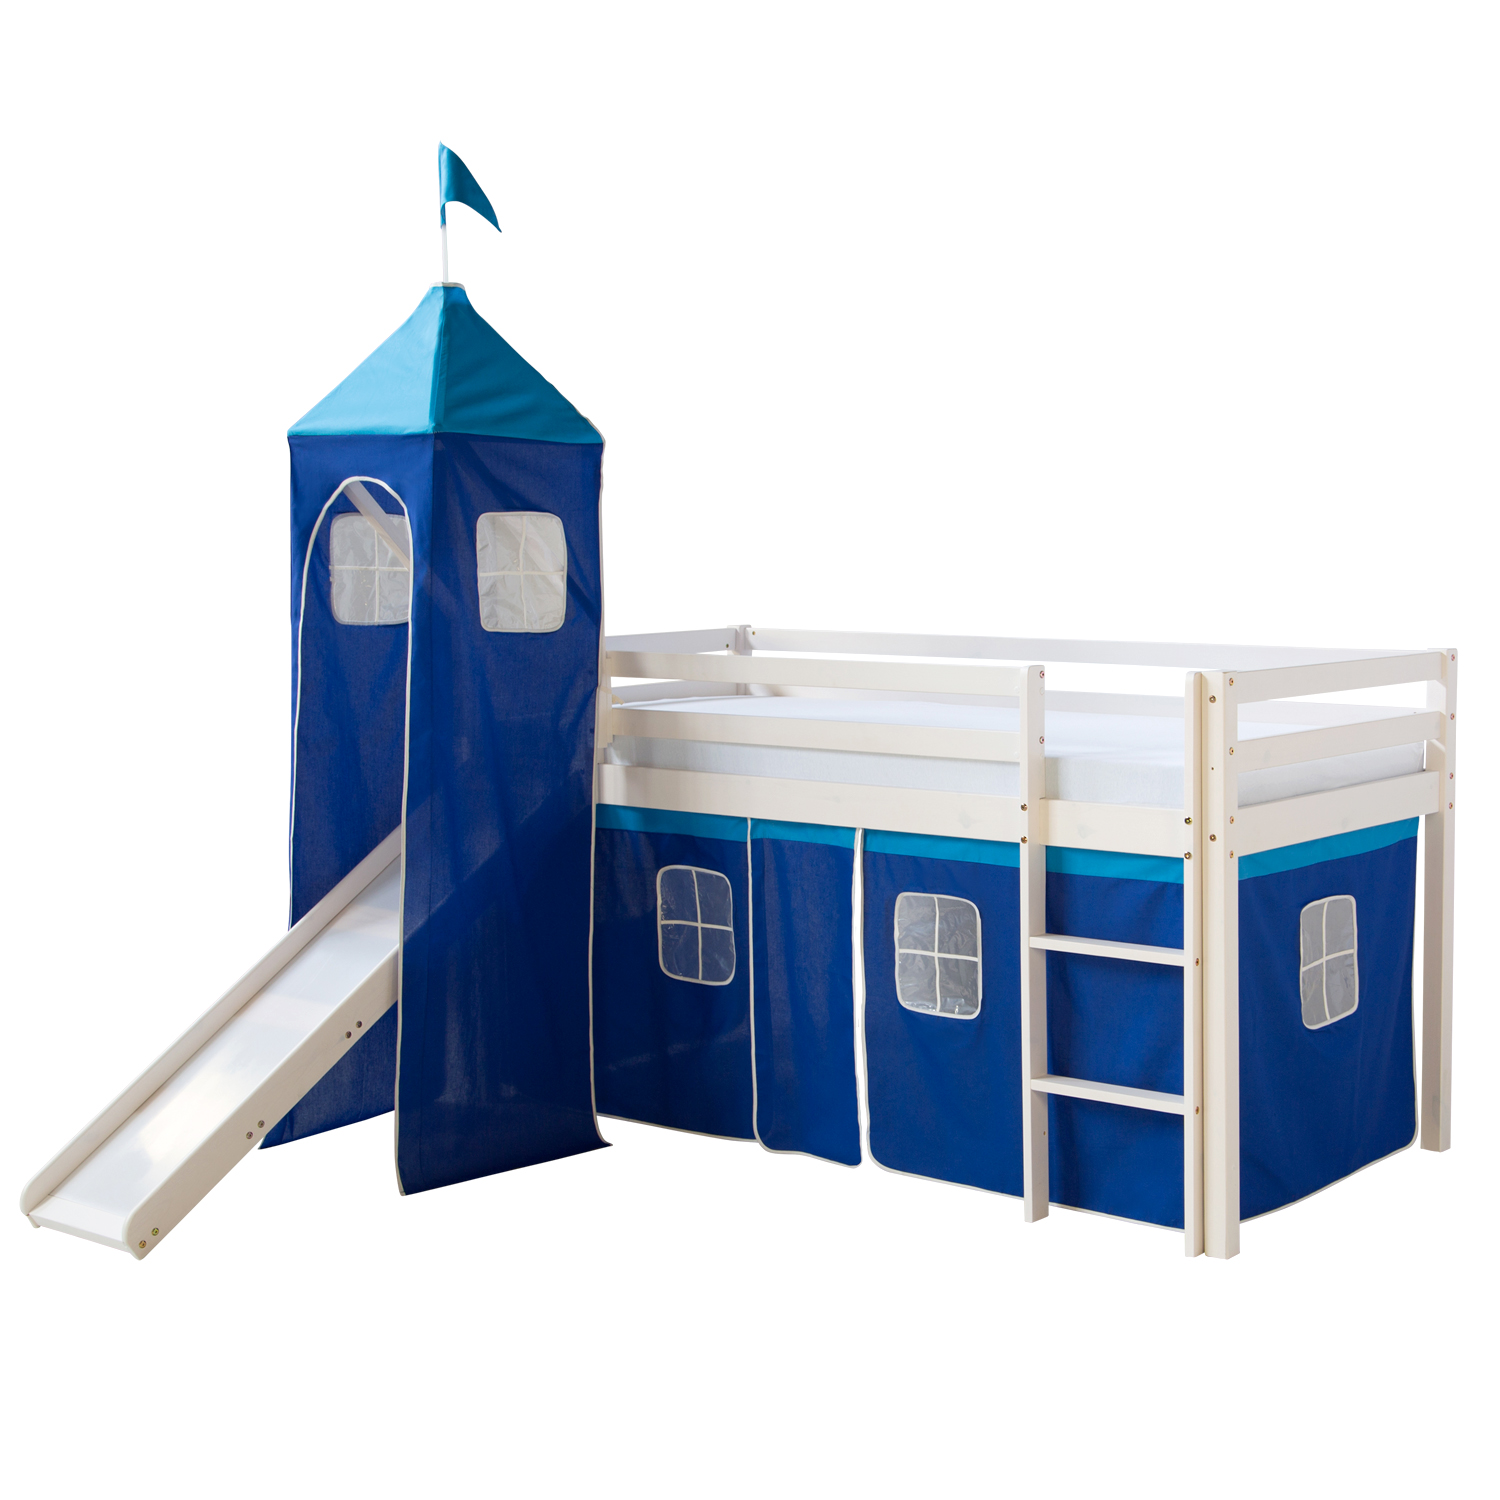 Kinderbett Hochbett Massiv Kiefer weiß blauer Vorhang, Rutsche, Turm Spielbett